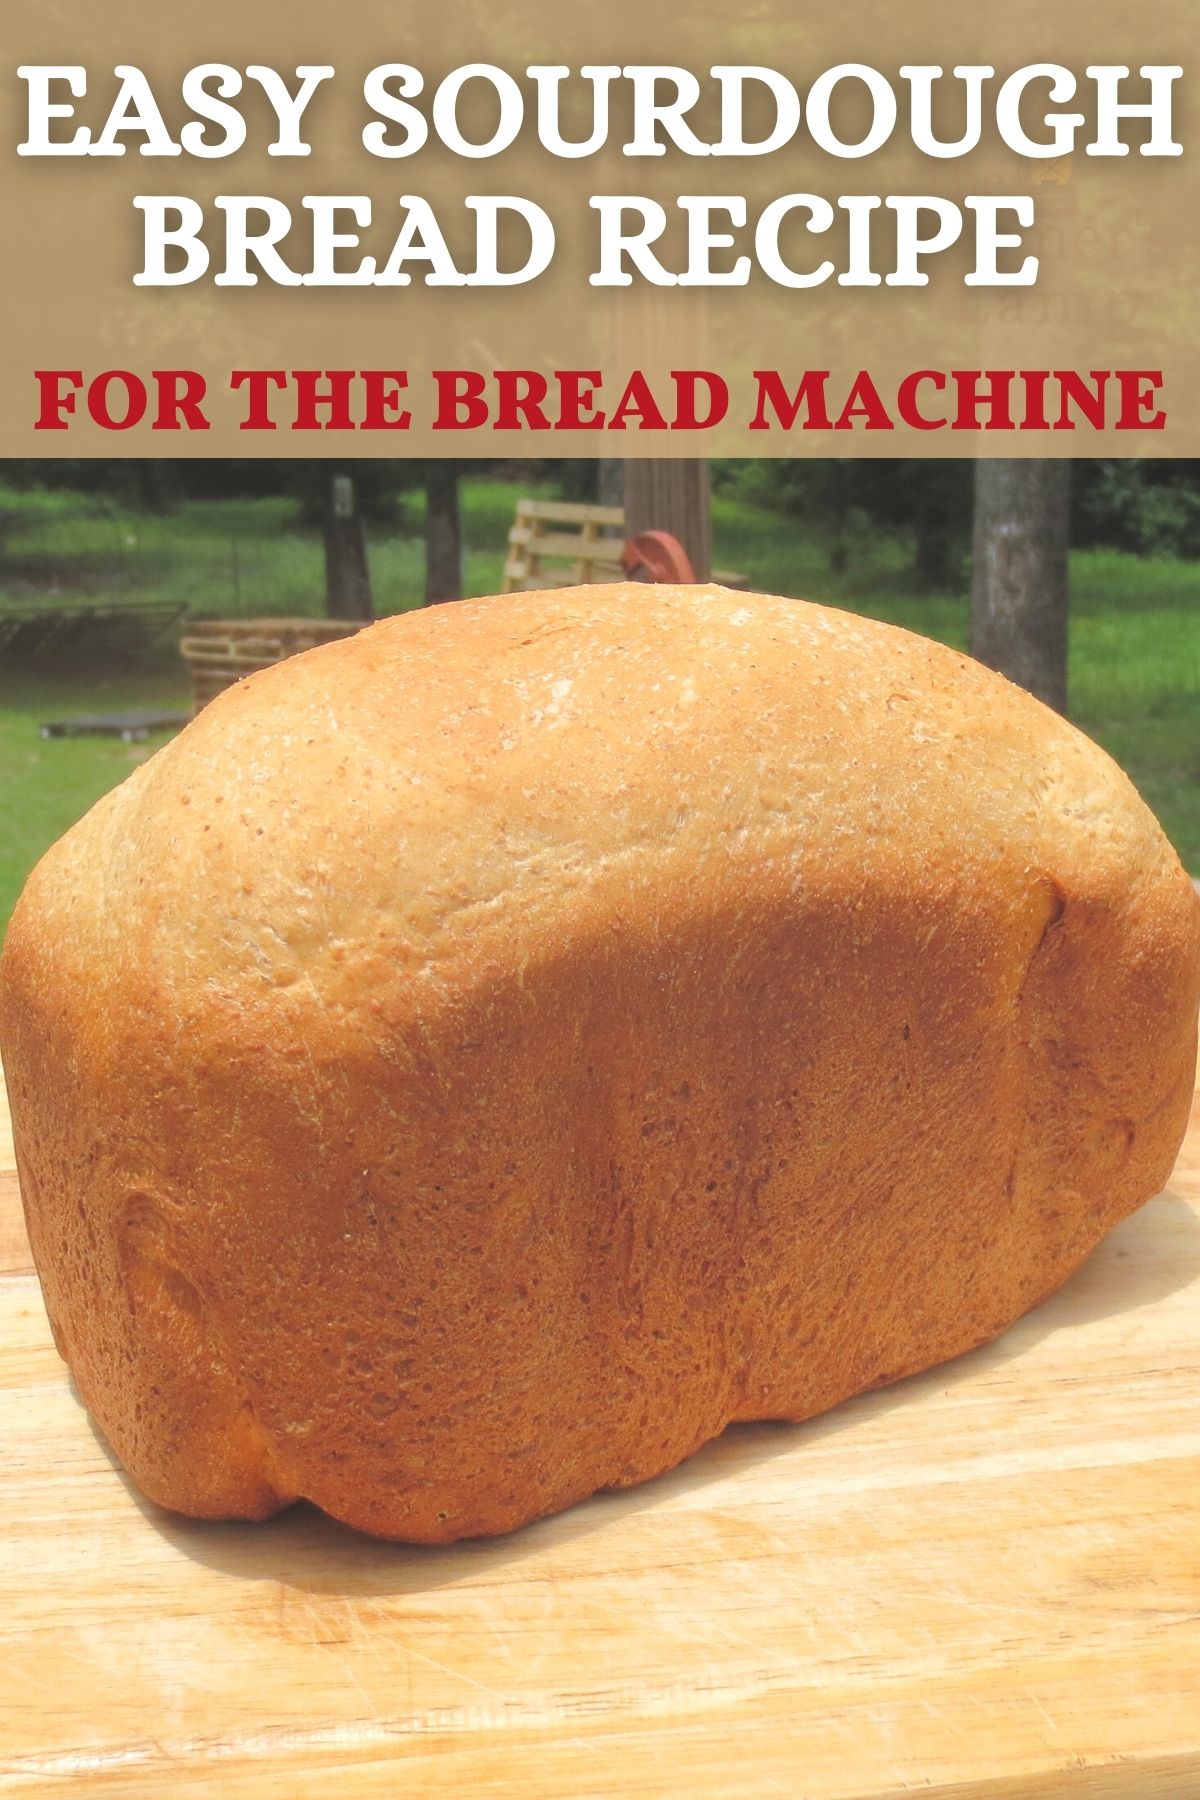 sourdough bread recipe for the bread machine PIN